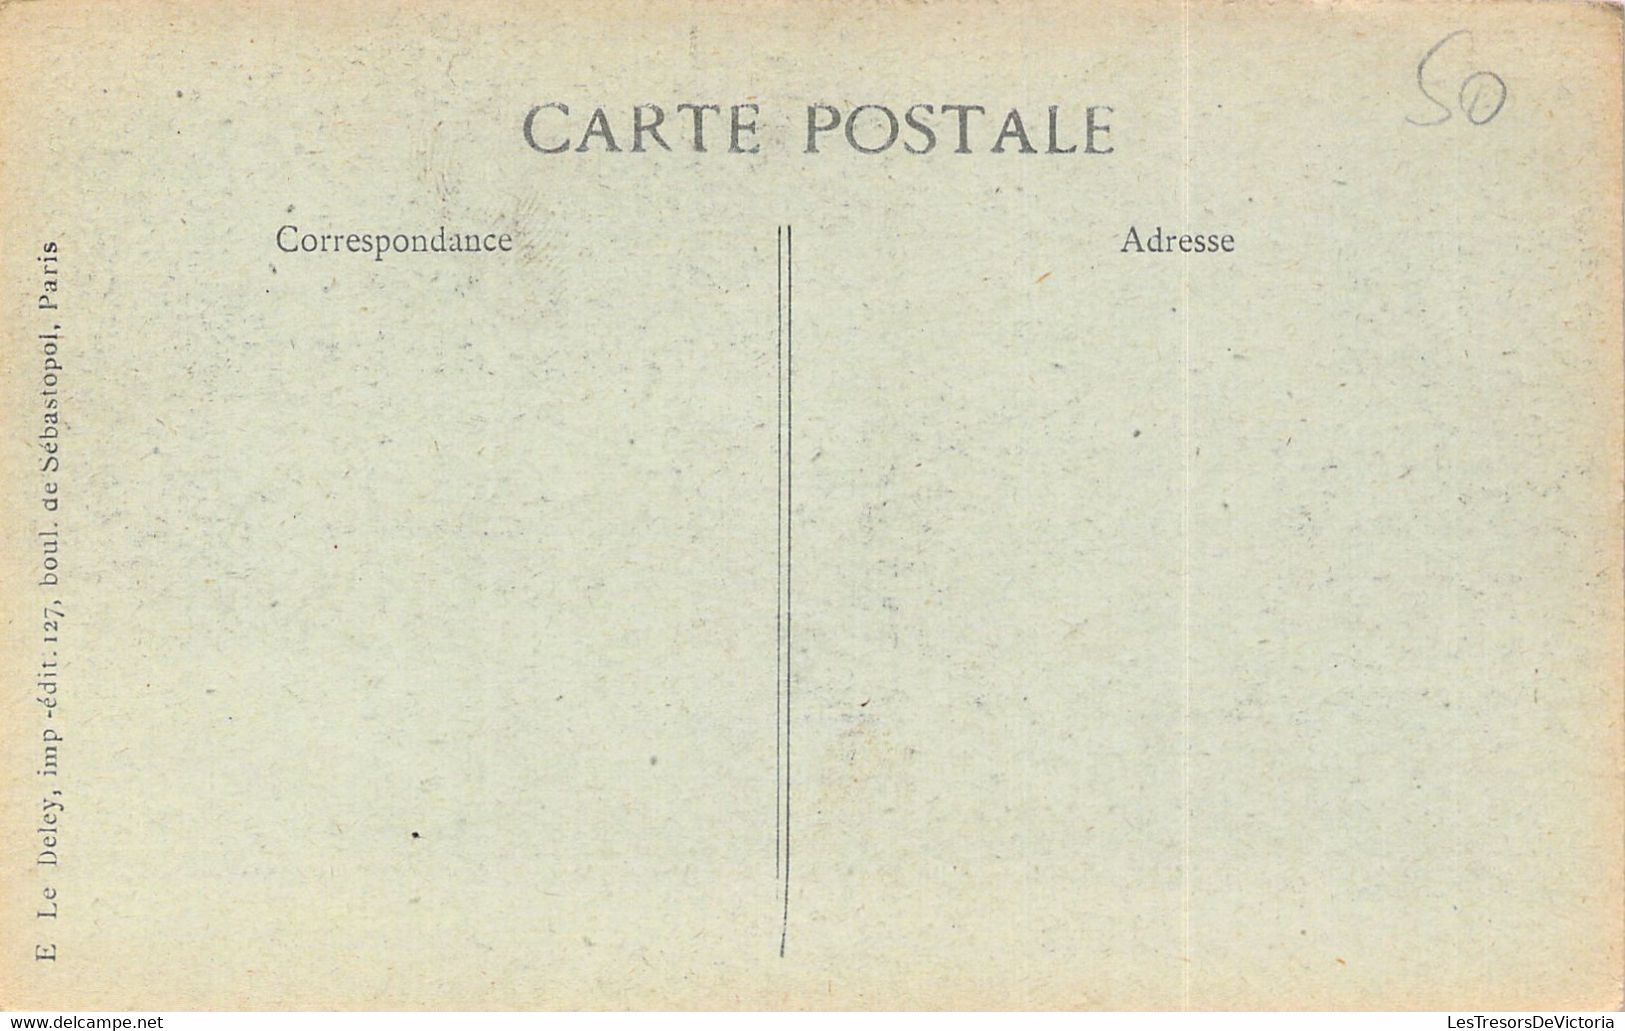 PARIS - Revue Du 14 Juillet 1918 - Les Polonais Place De La Concorde - Carte Postale Ancienne - Other & Unclassified